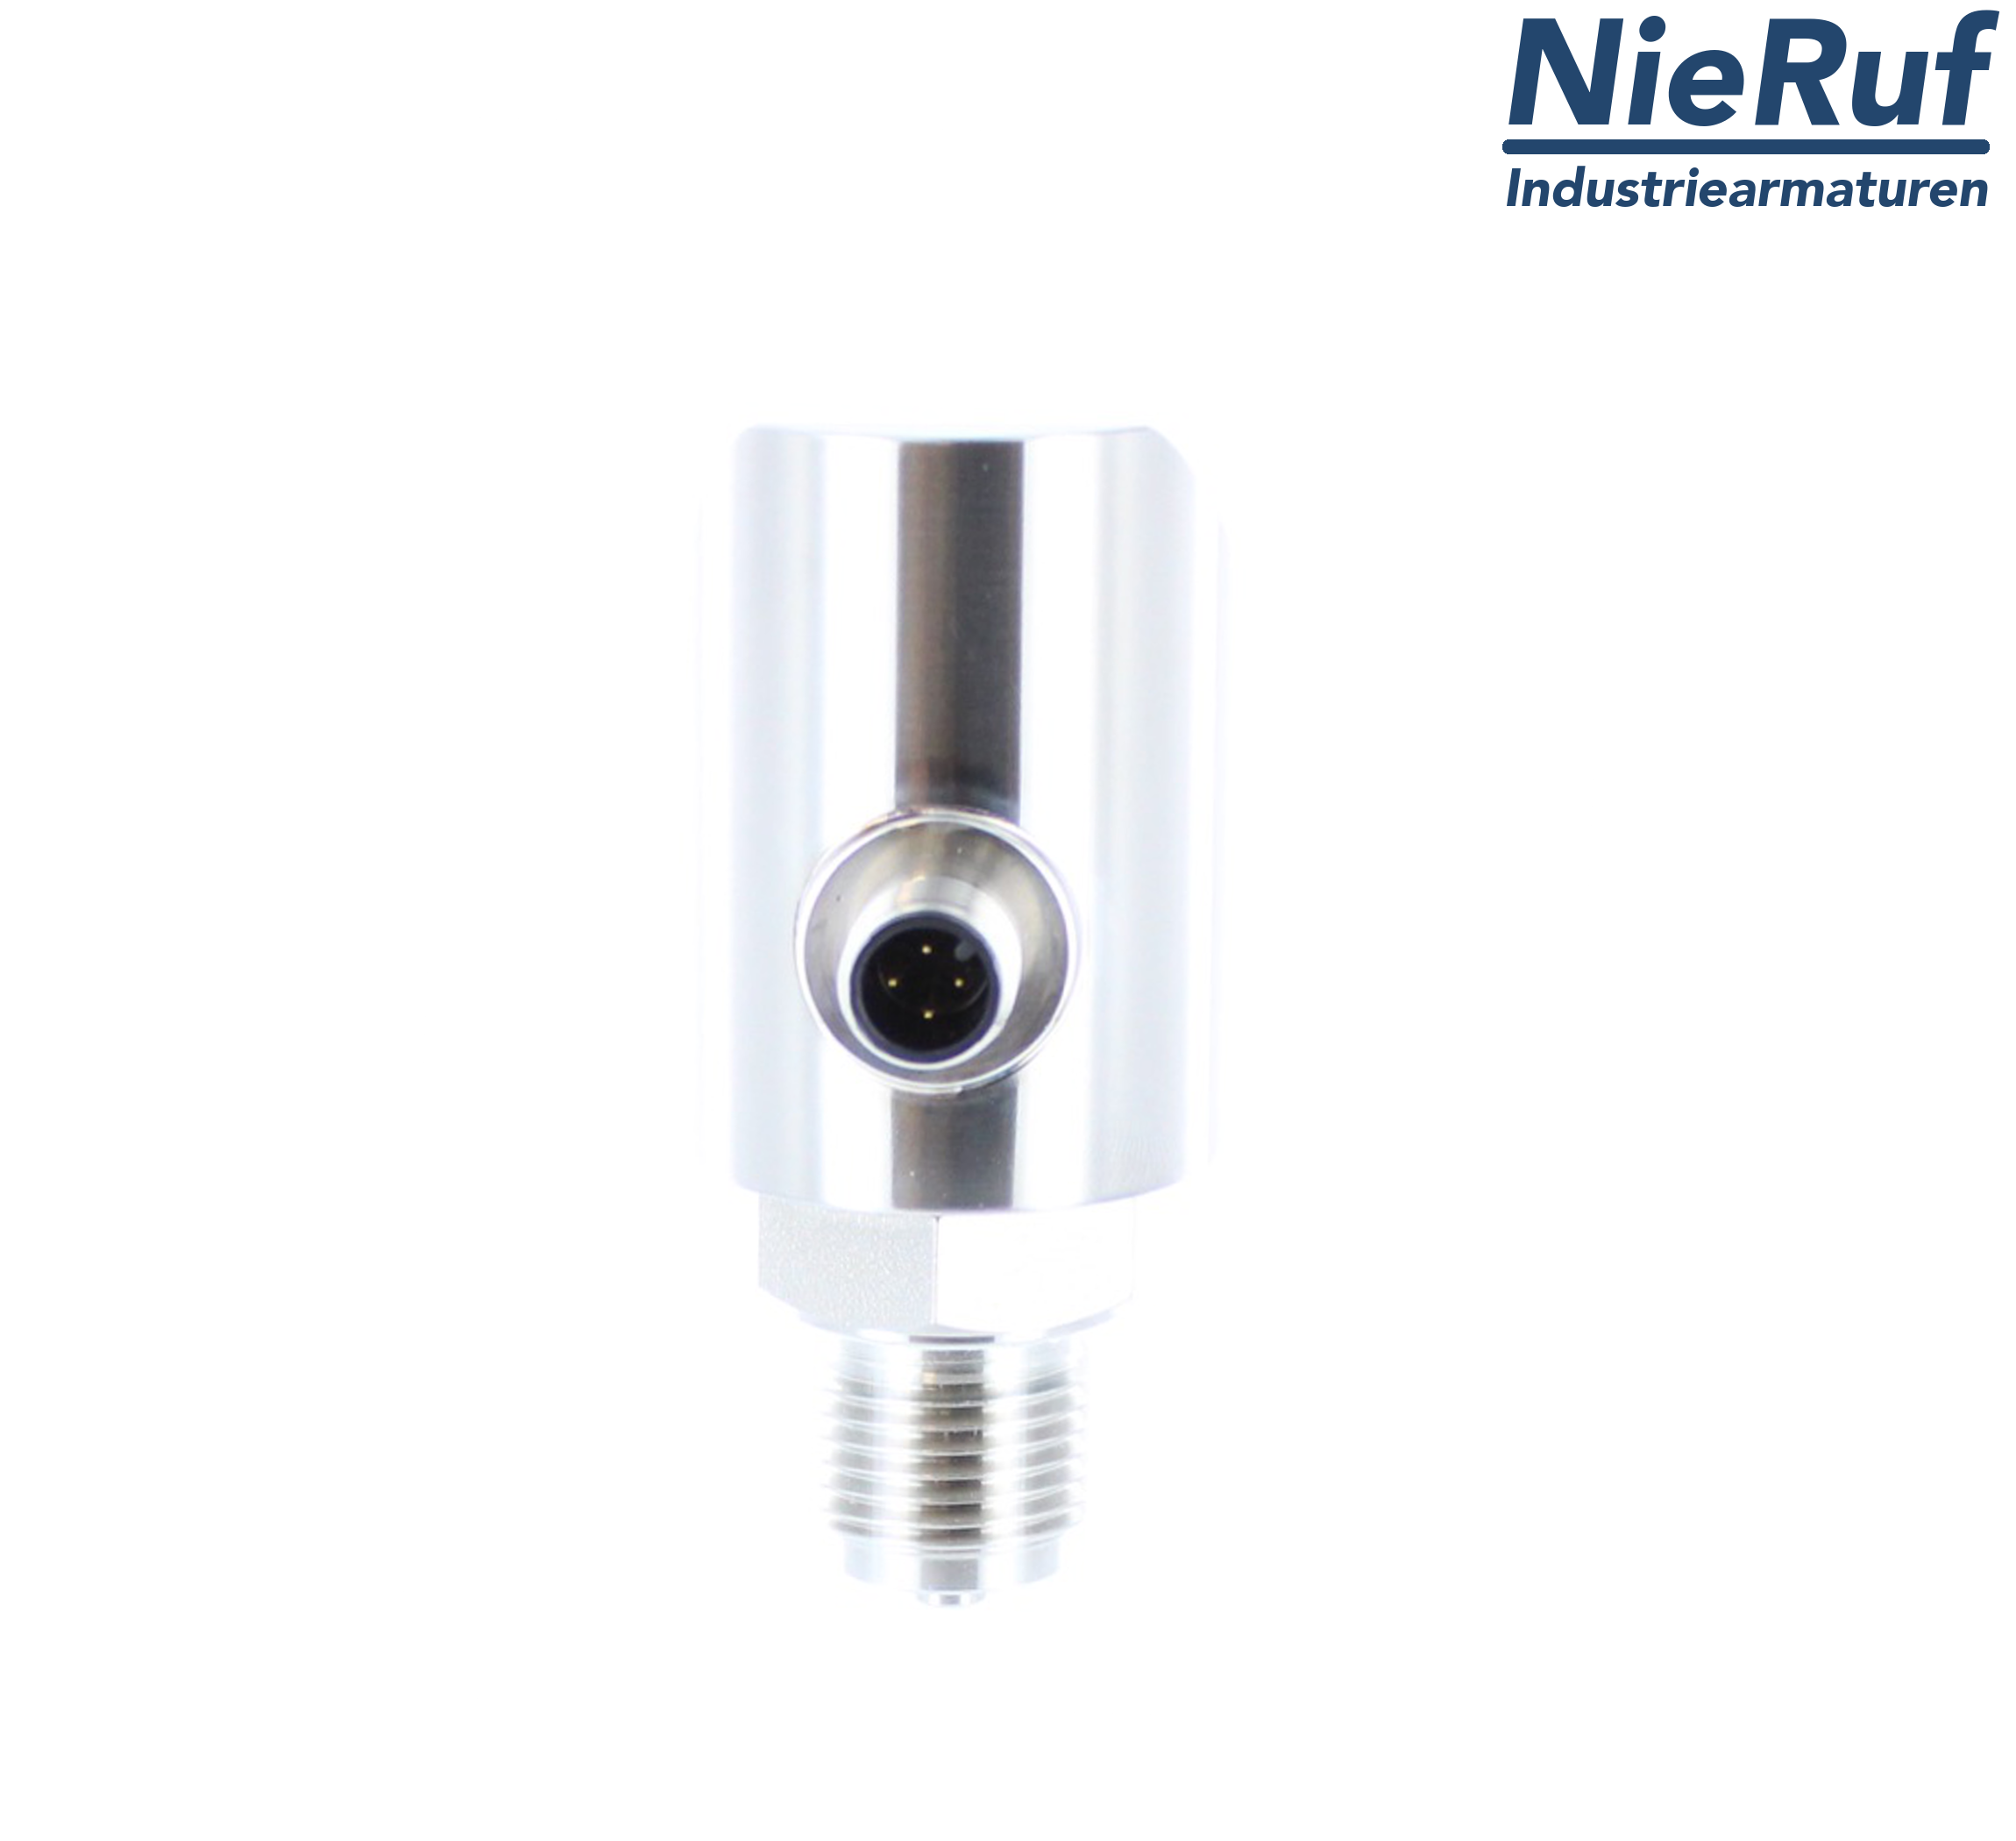 digital pressure sensor G 1/2" B IB 4-wire: 1xPNP, 1x4 - 20mA, Desina FPM 0,0 - 0,25 bar